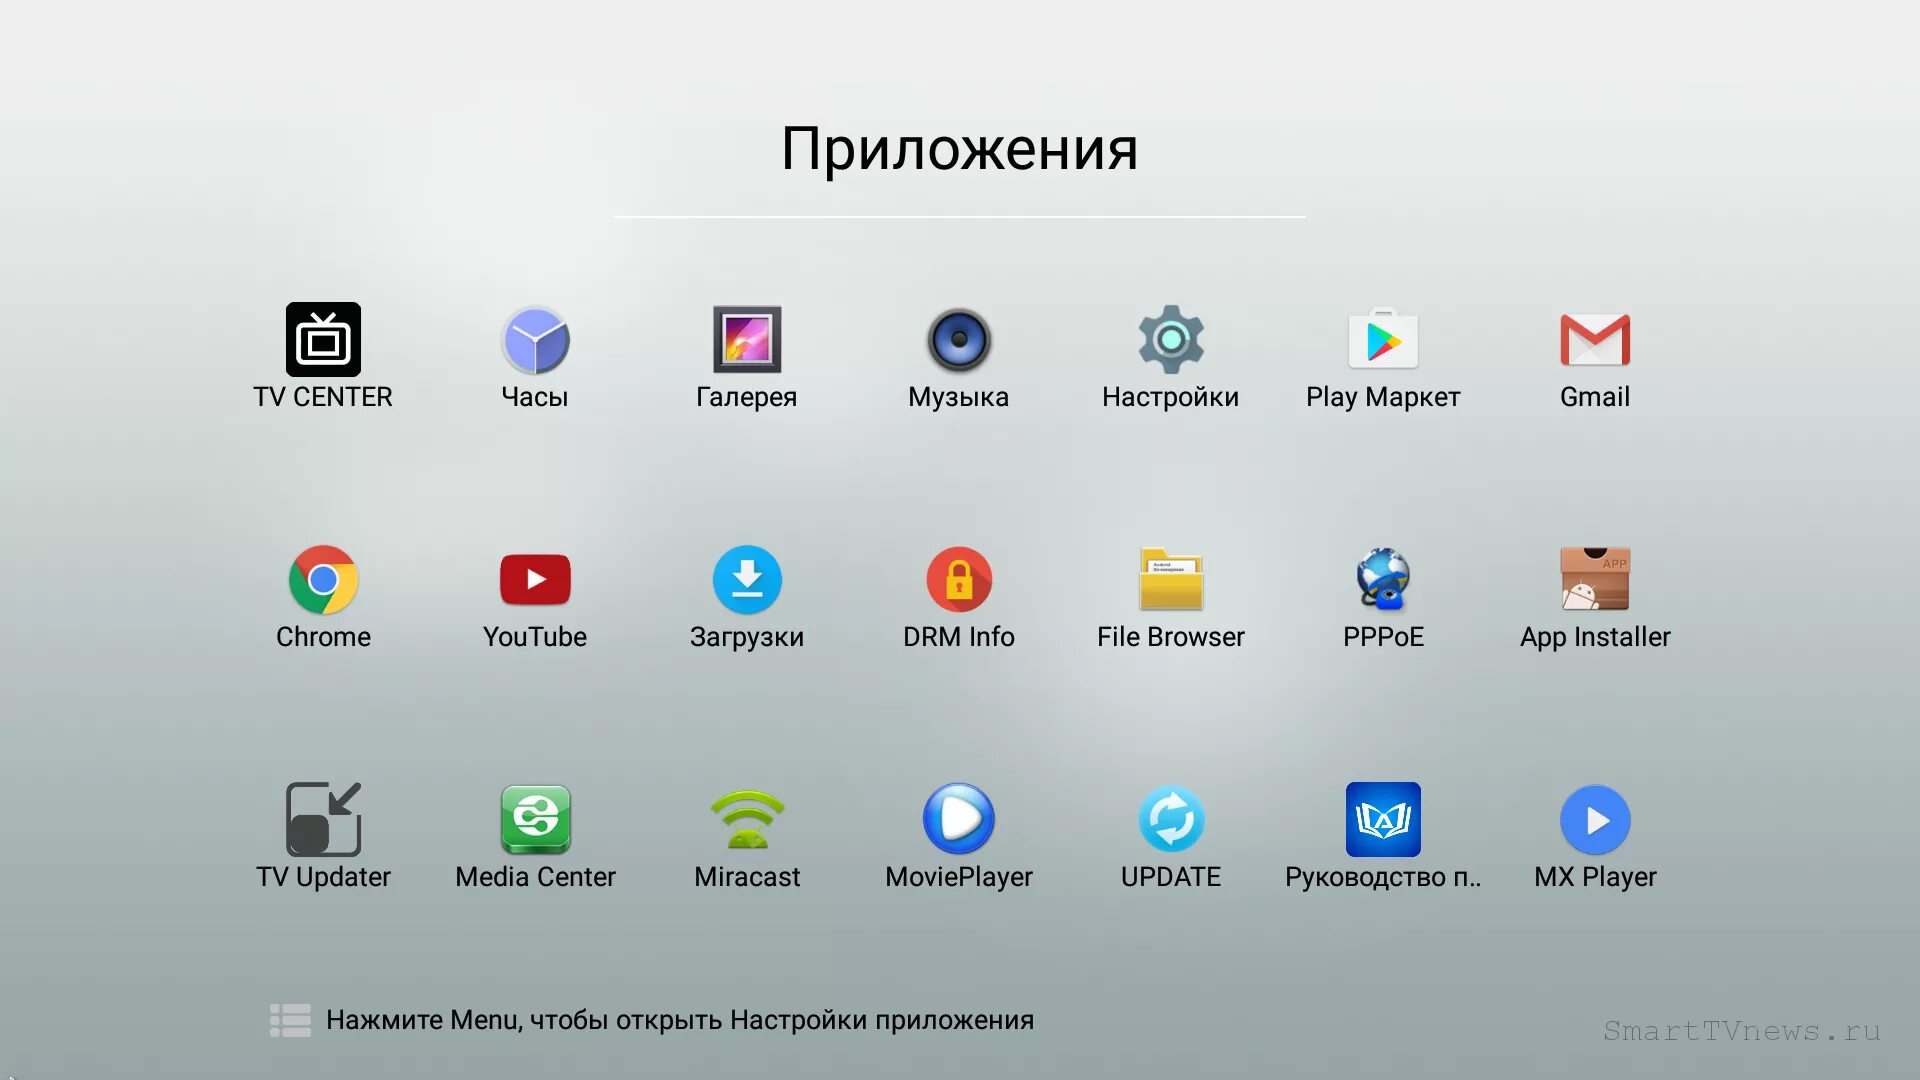 Apk приложения для телевизора. Приложения для TV приставок. Программы для андроид приставки. Android TV приложения. Андроид ТВ приставка Интерфейс.